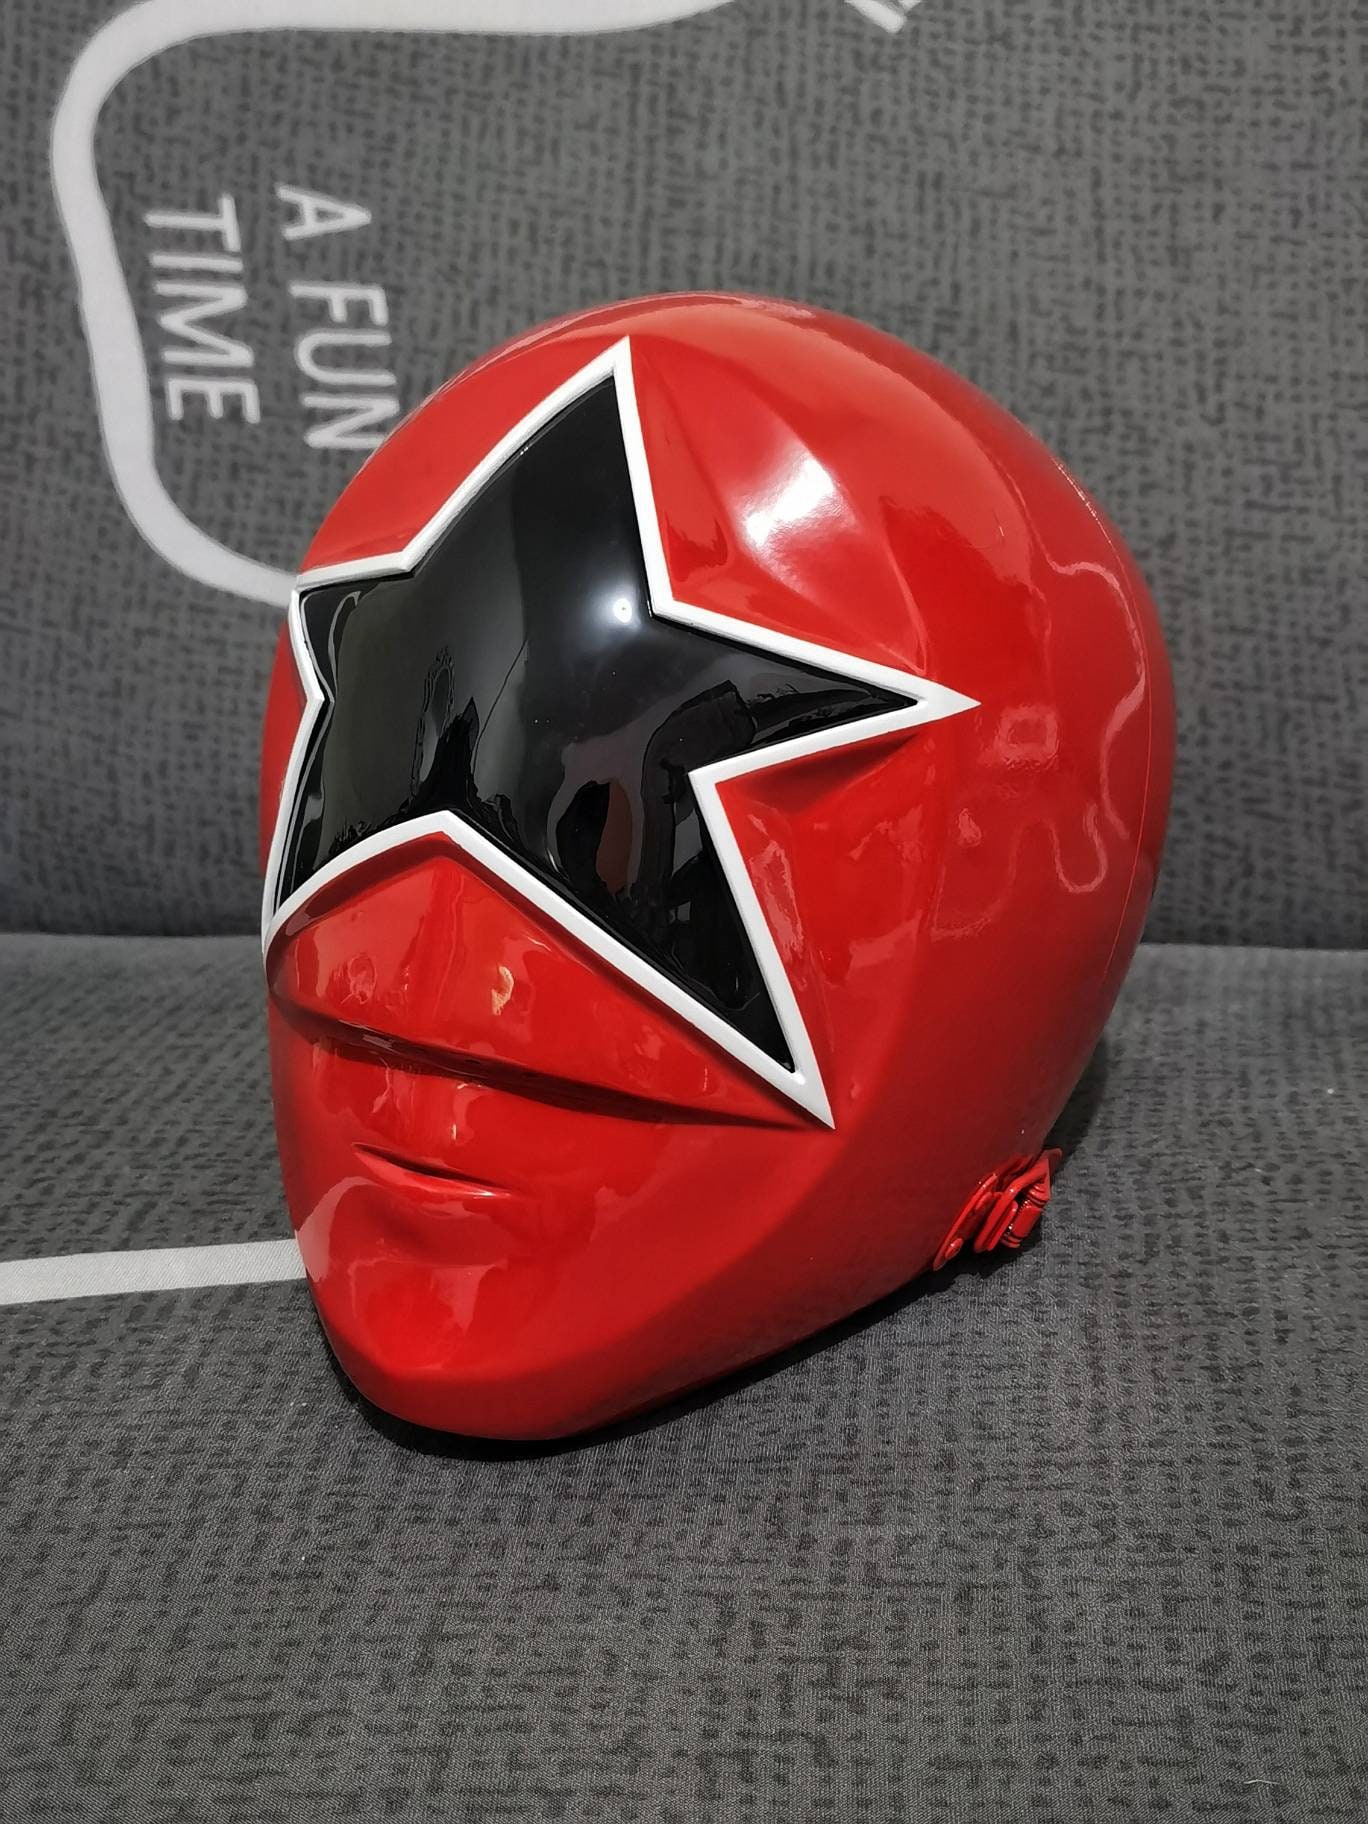 Gearhumans 3D Power Rangers Zeo Red Custom Hockey Jersey